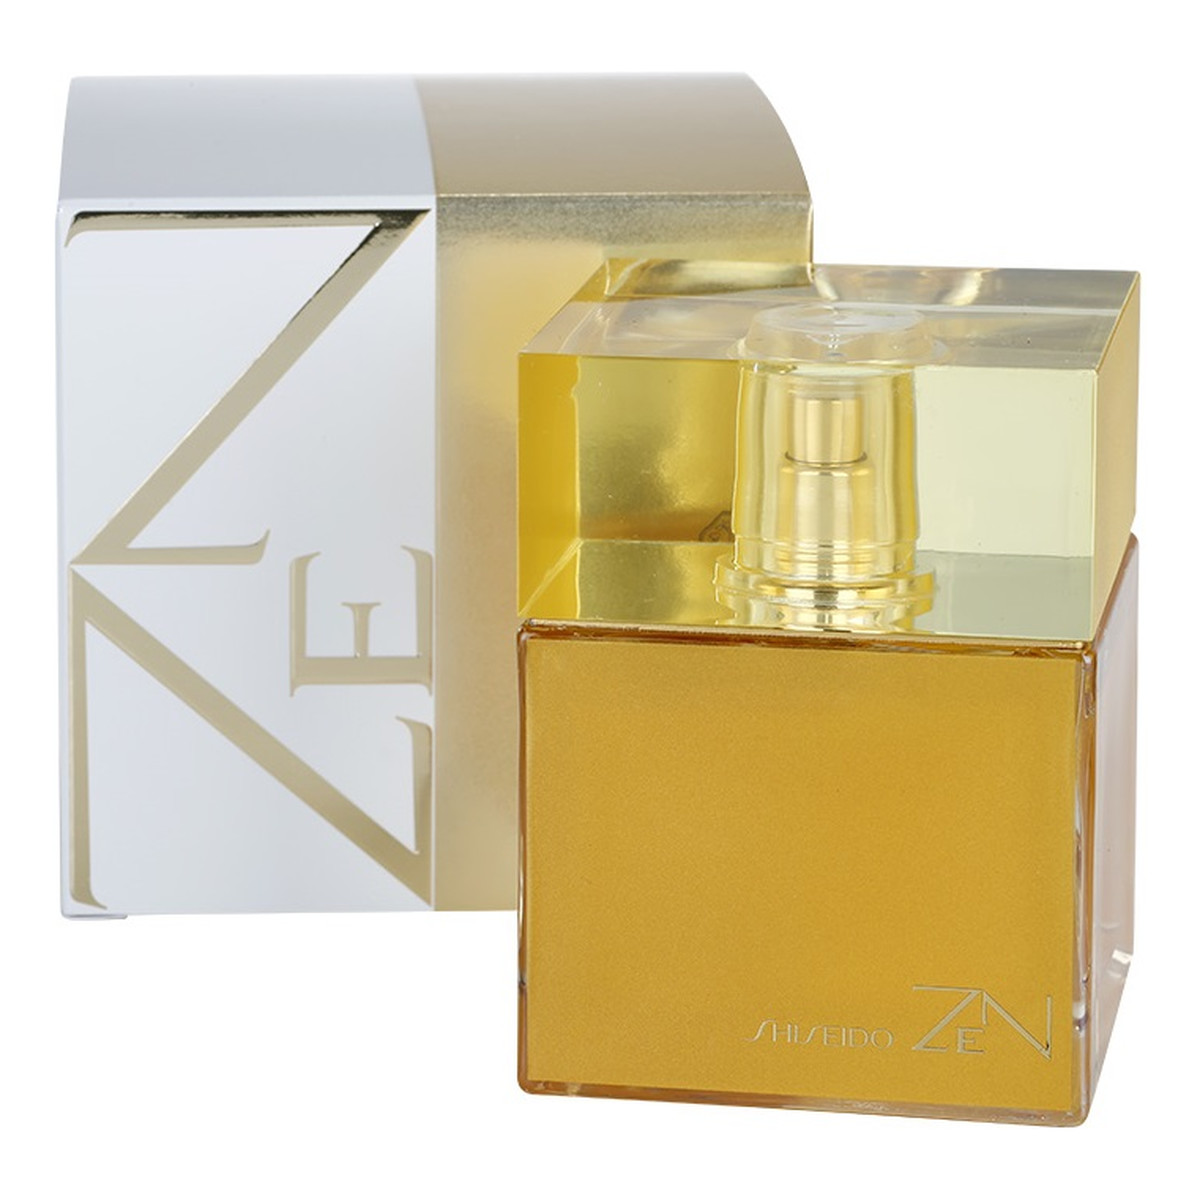 Shiseido Zen woda perfumowana dla kobiet 100ml